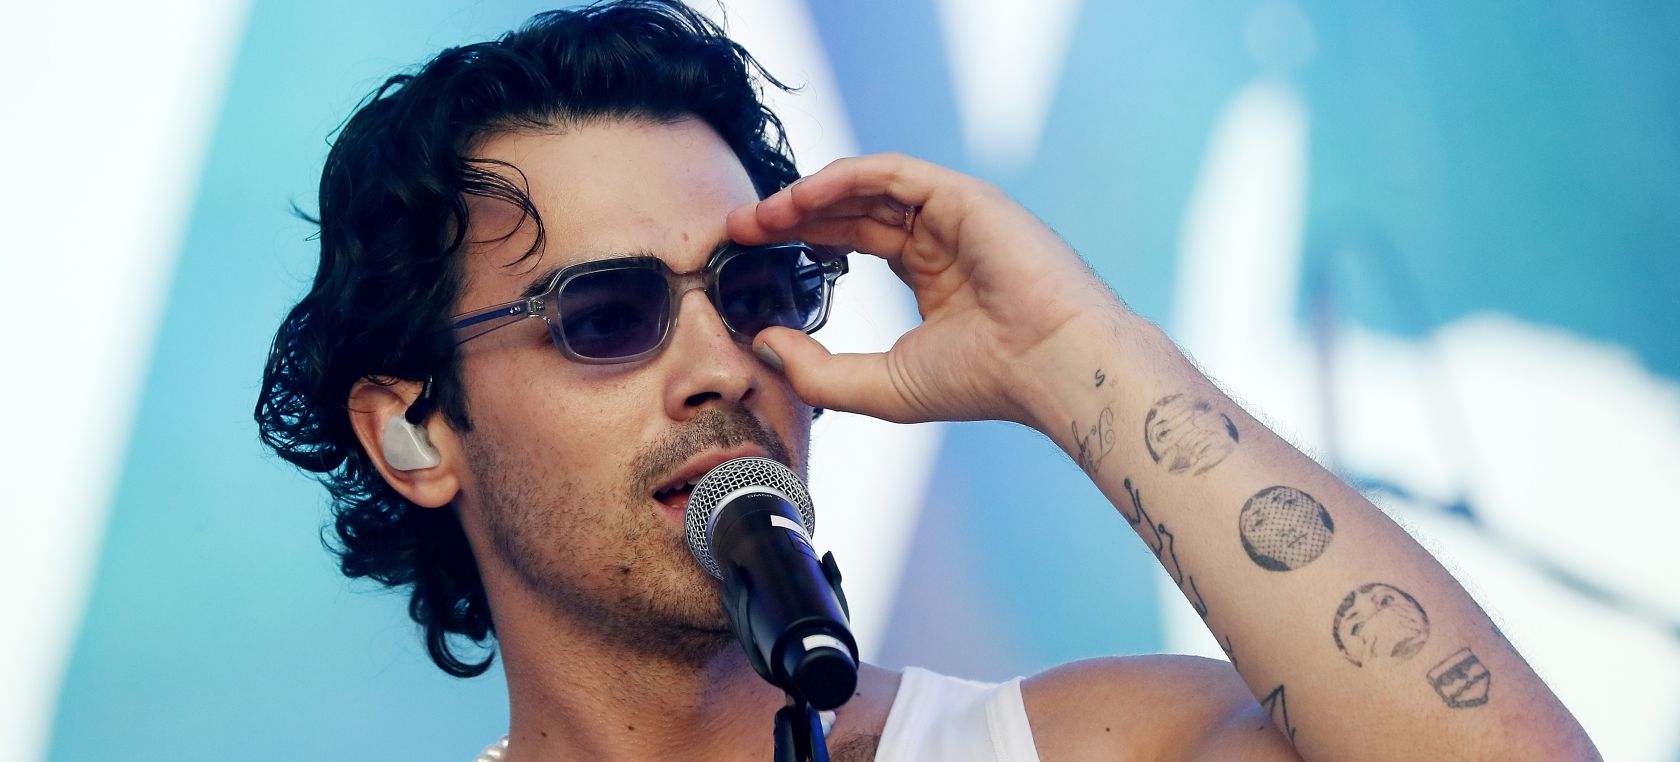 Joe Jonas desvela sus retoques estéticos y cómo se cuida la piel: “No debemos sentirnos avergonzados...”